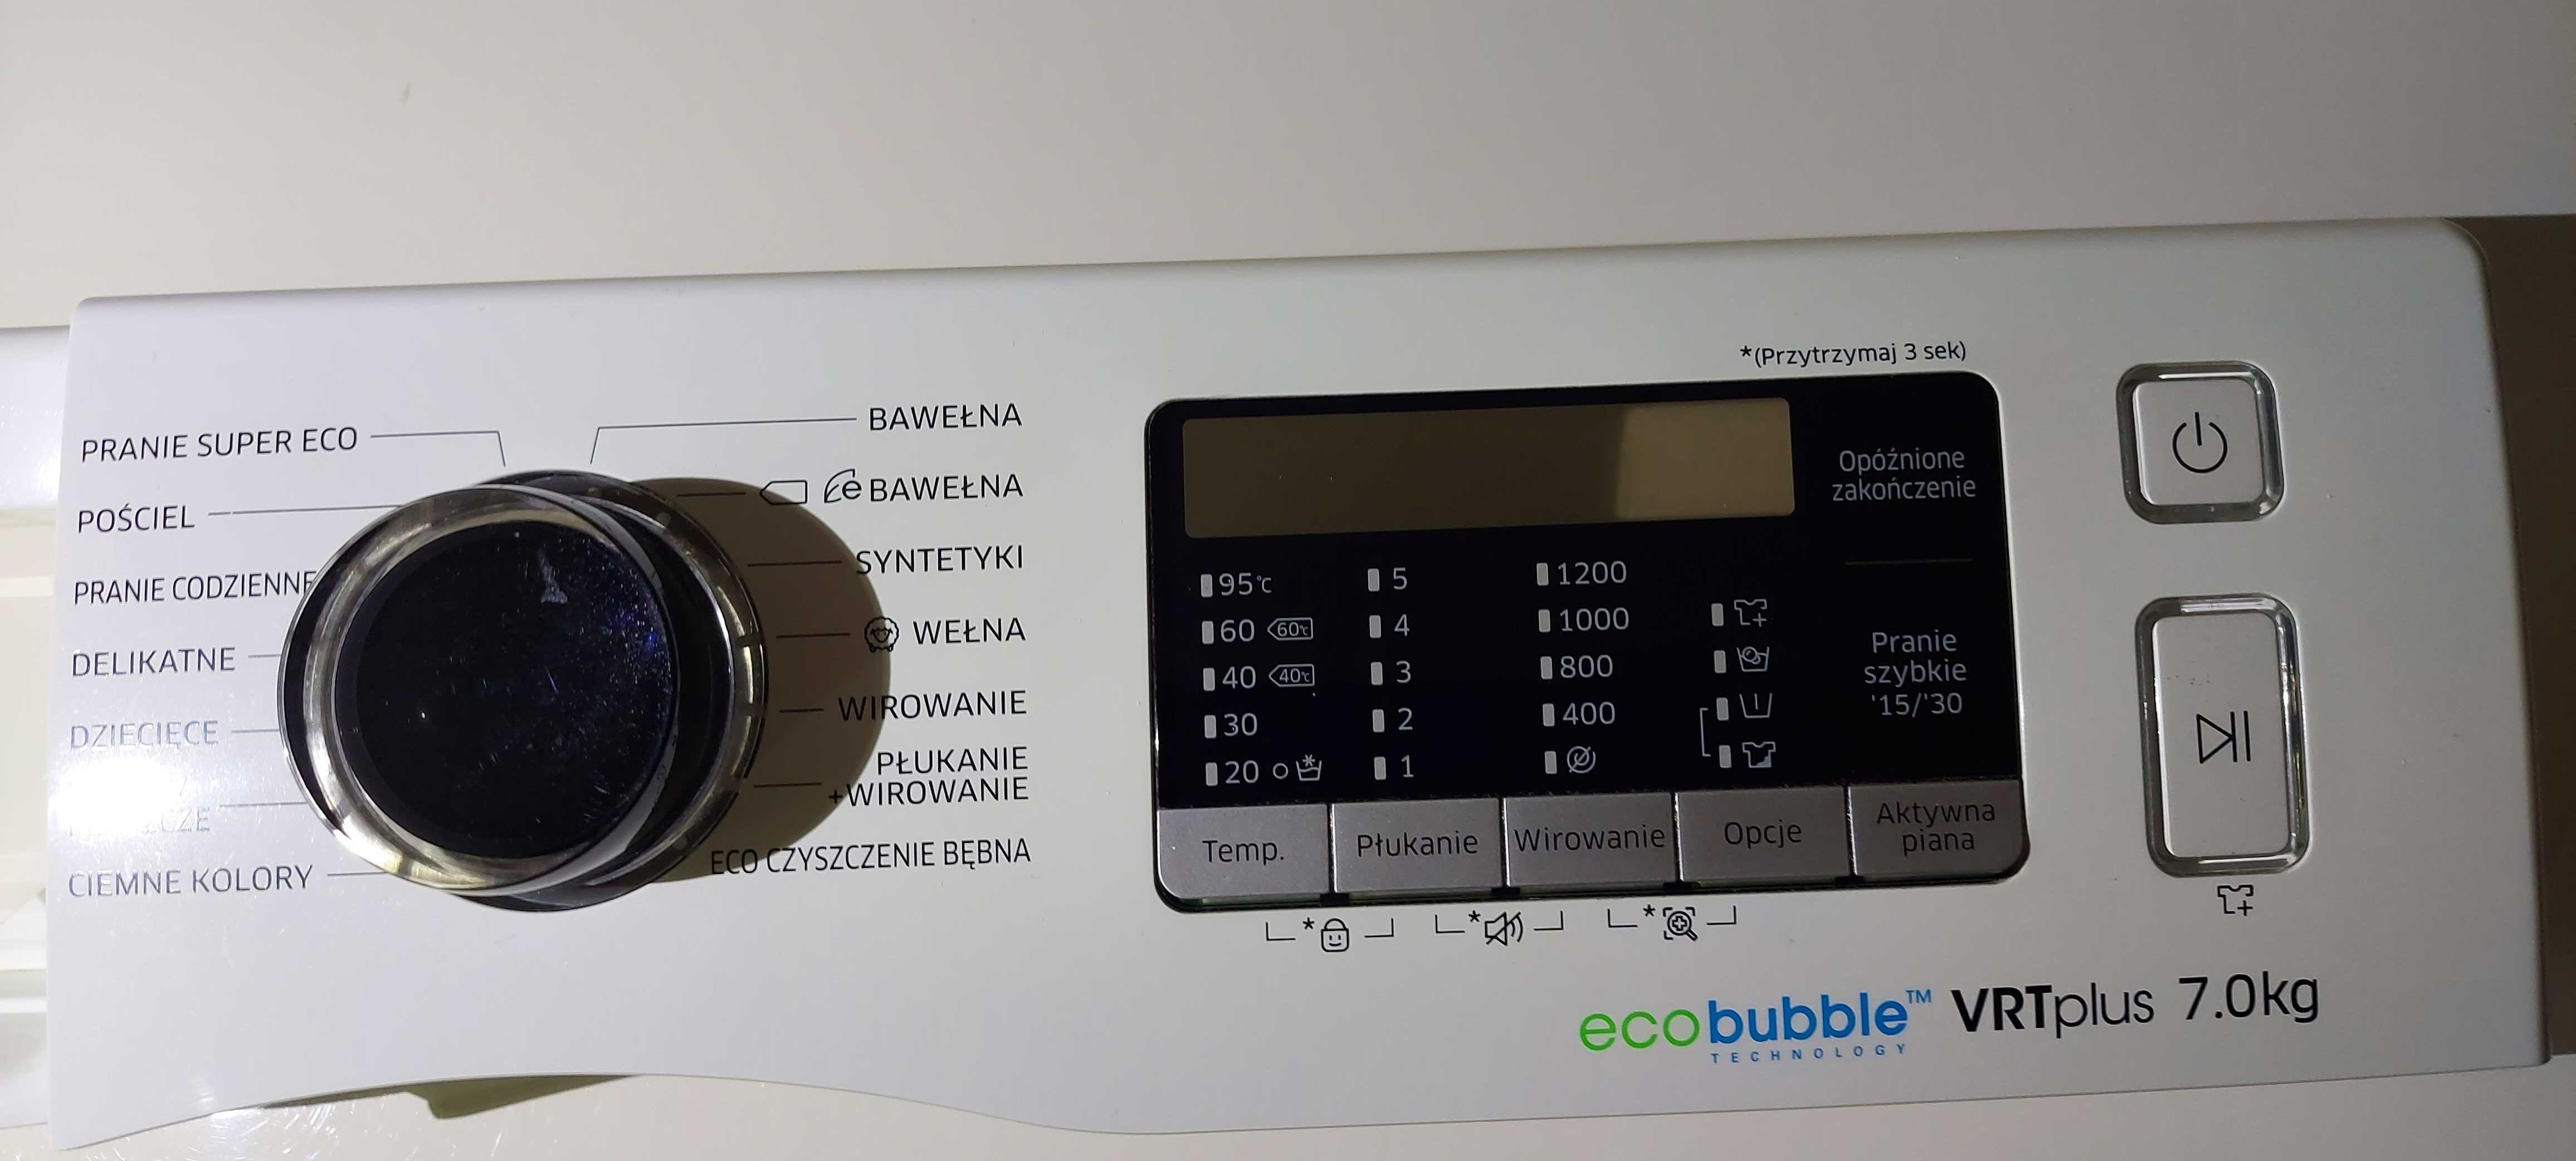 Panel kontrolny z wyświetlaczem pralki Samsung eco bubble